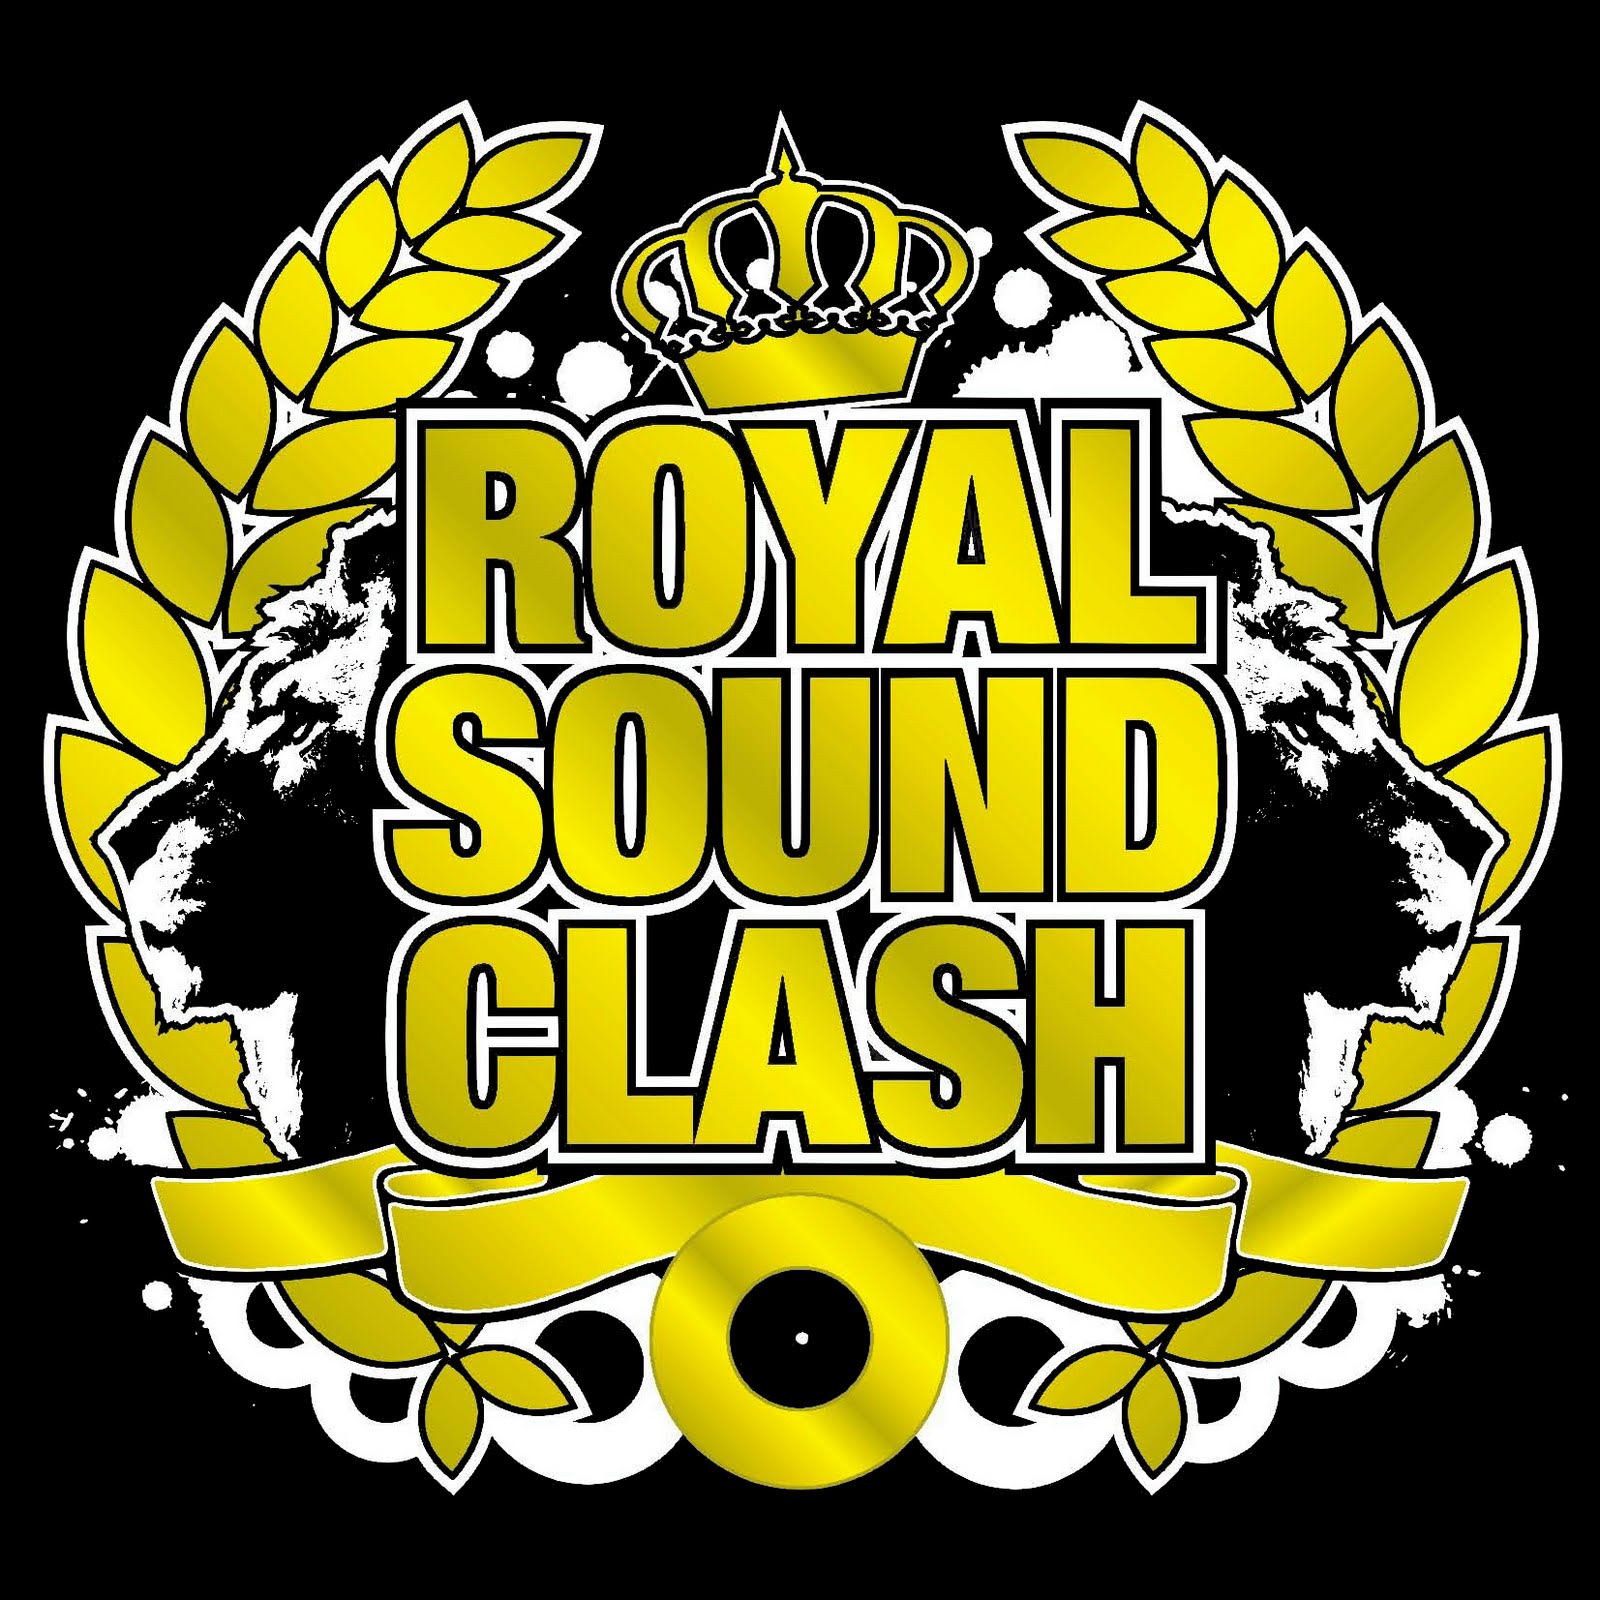 Royal Sound Clash Dj Mess